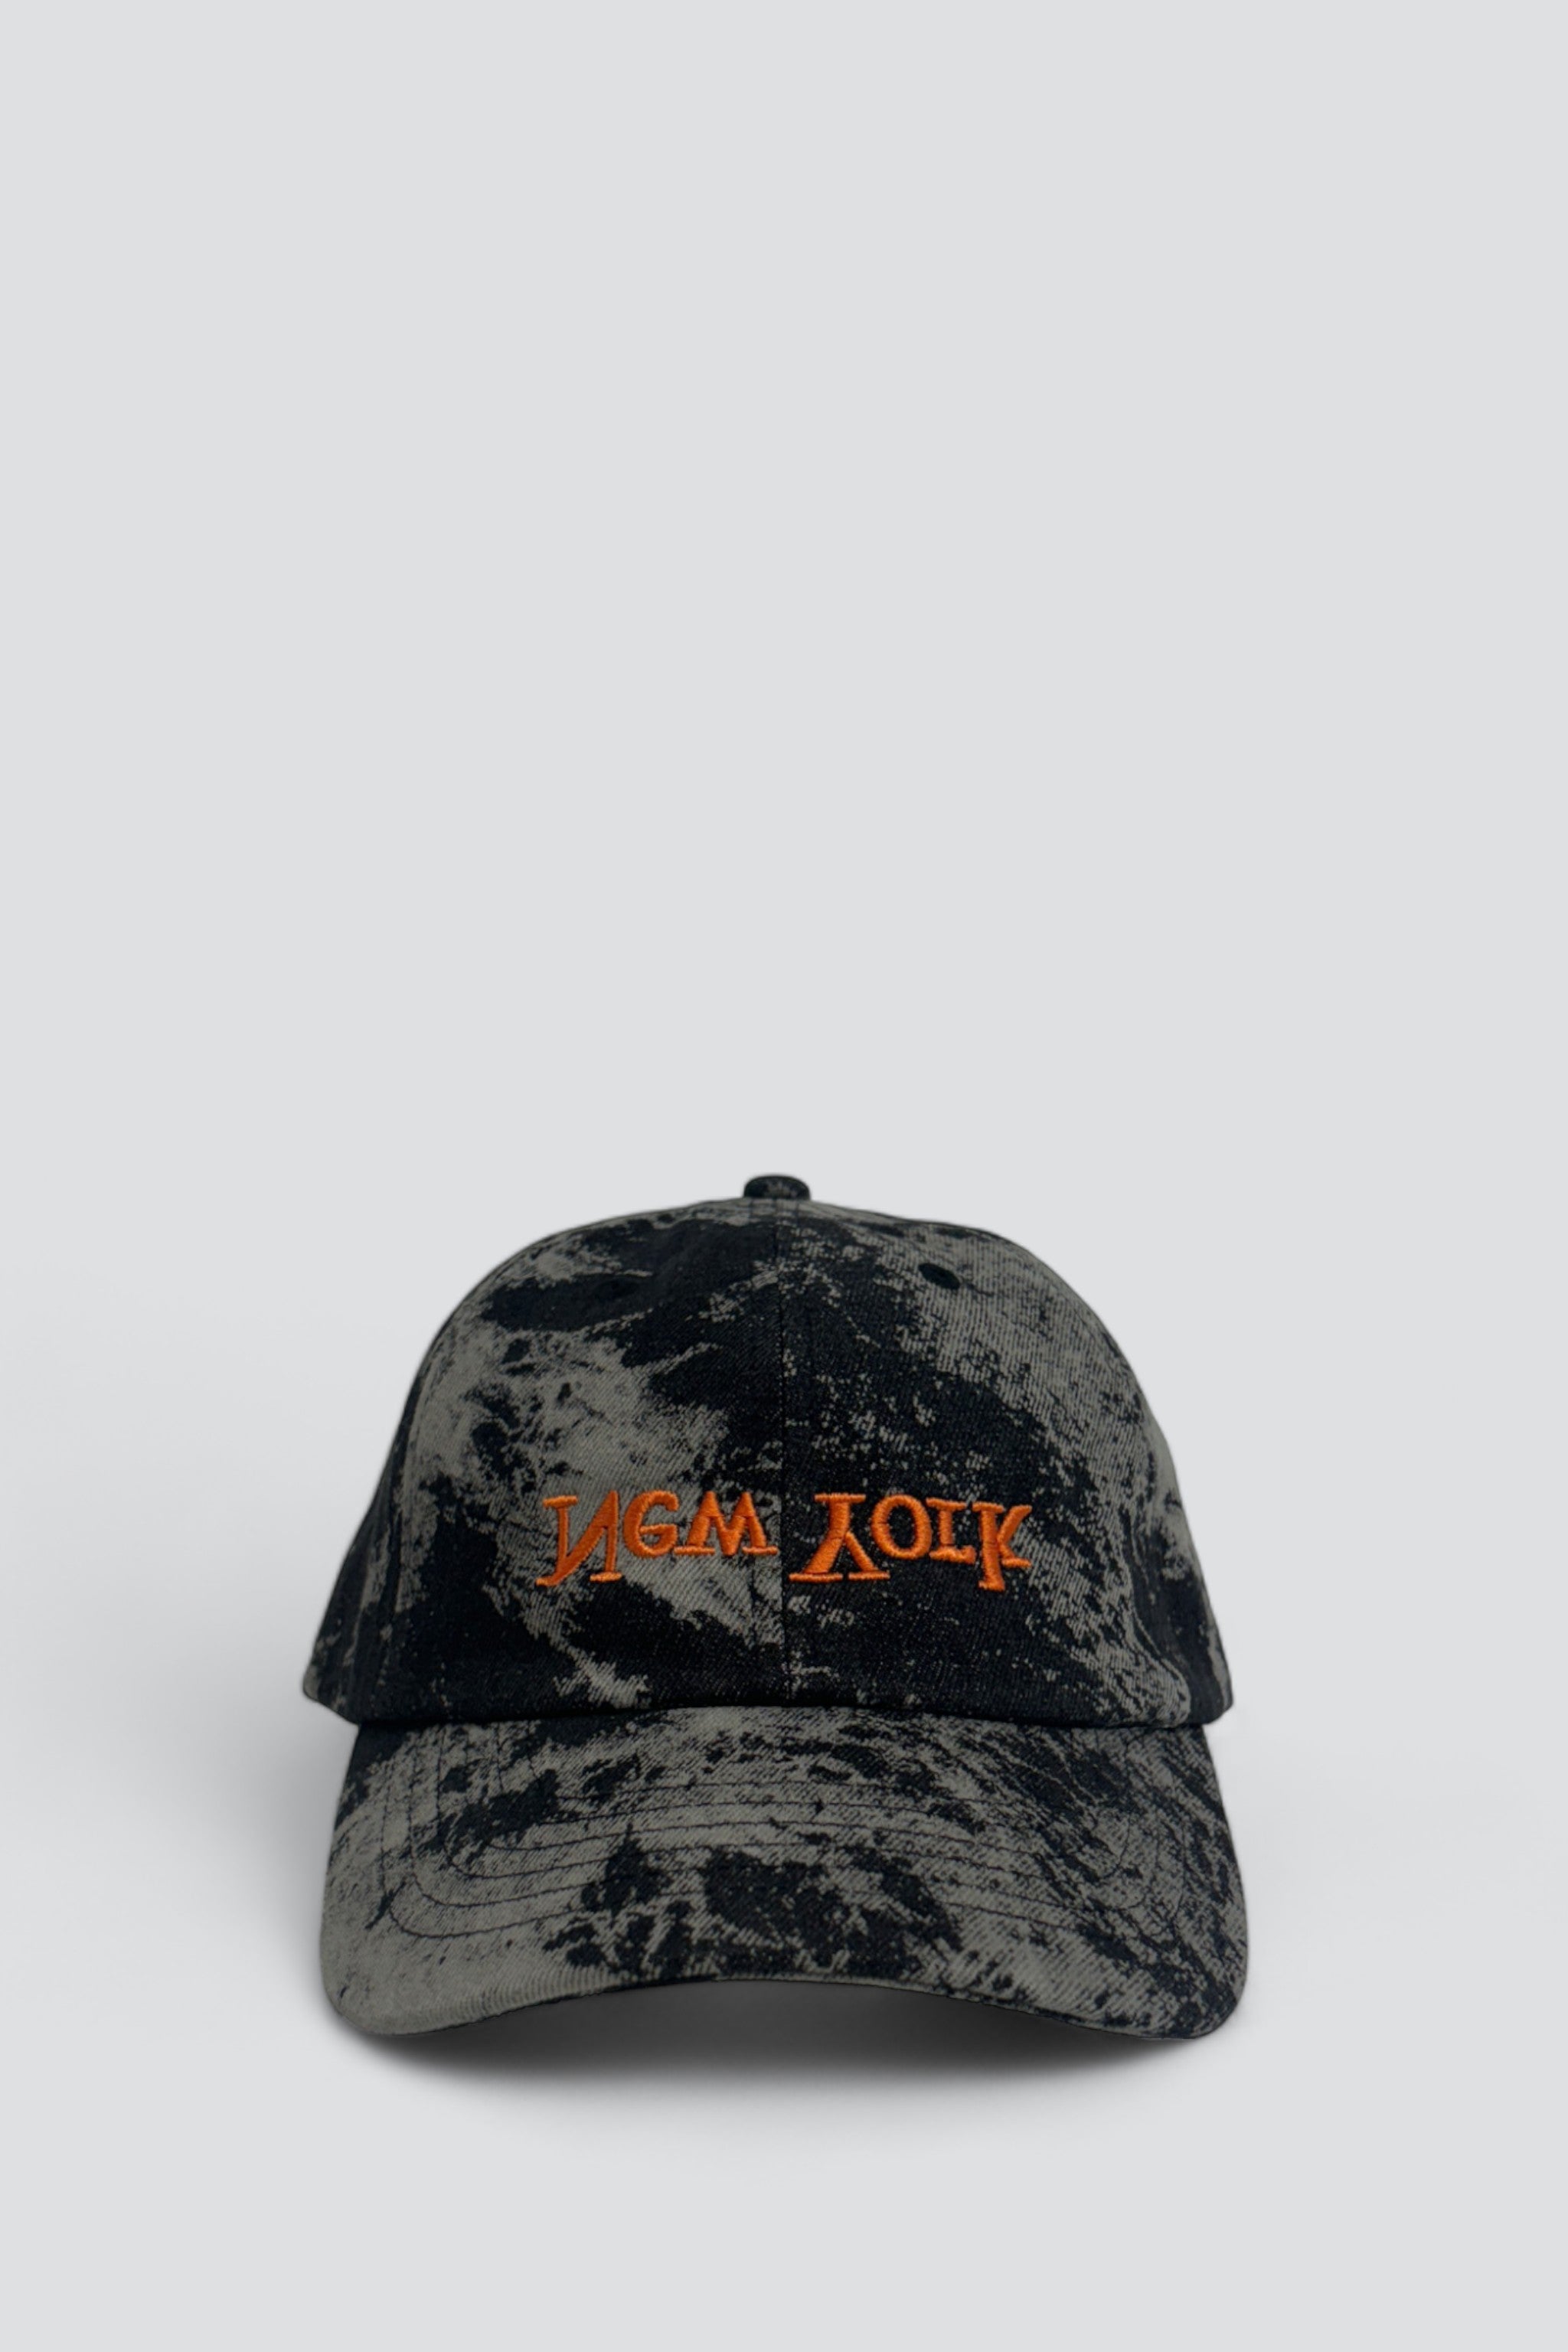 New York Embroidered Hat - Black Tie Dye/Orange